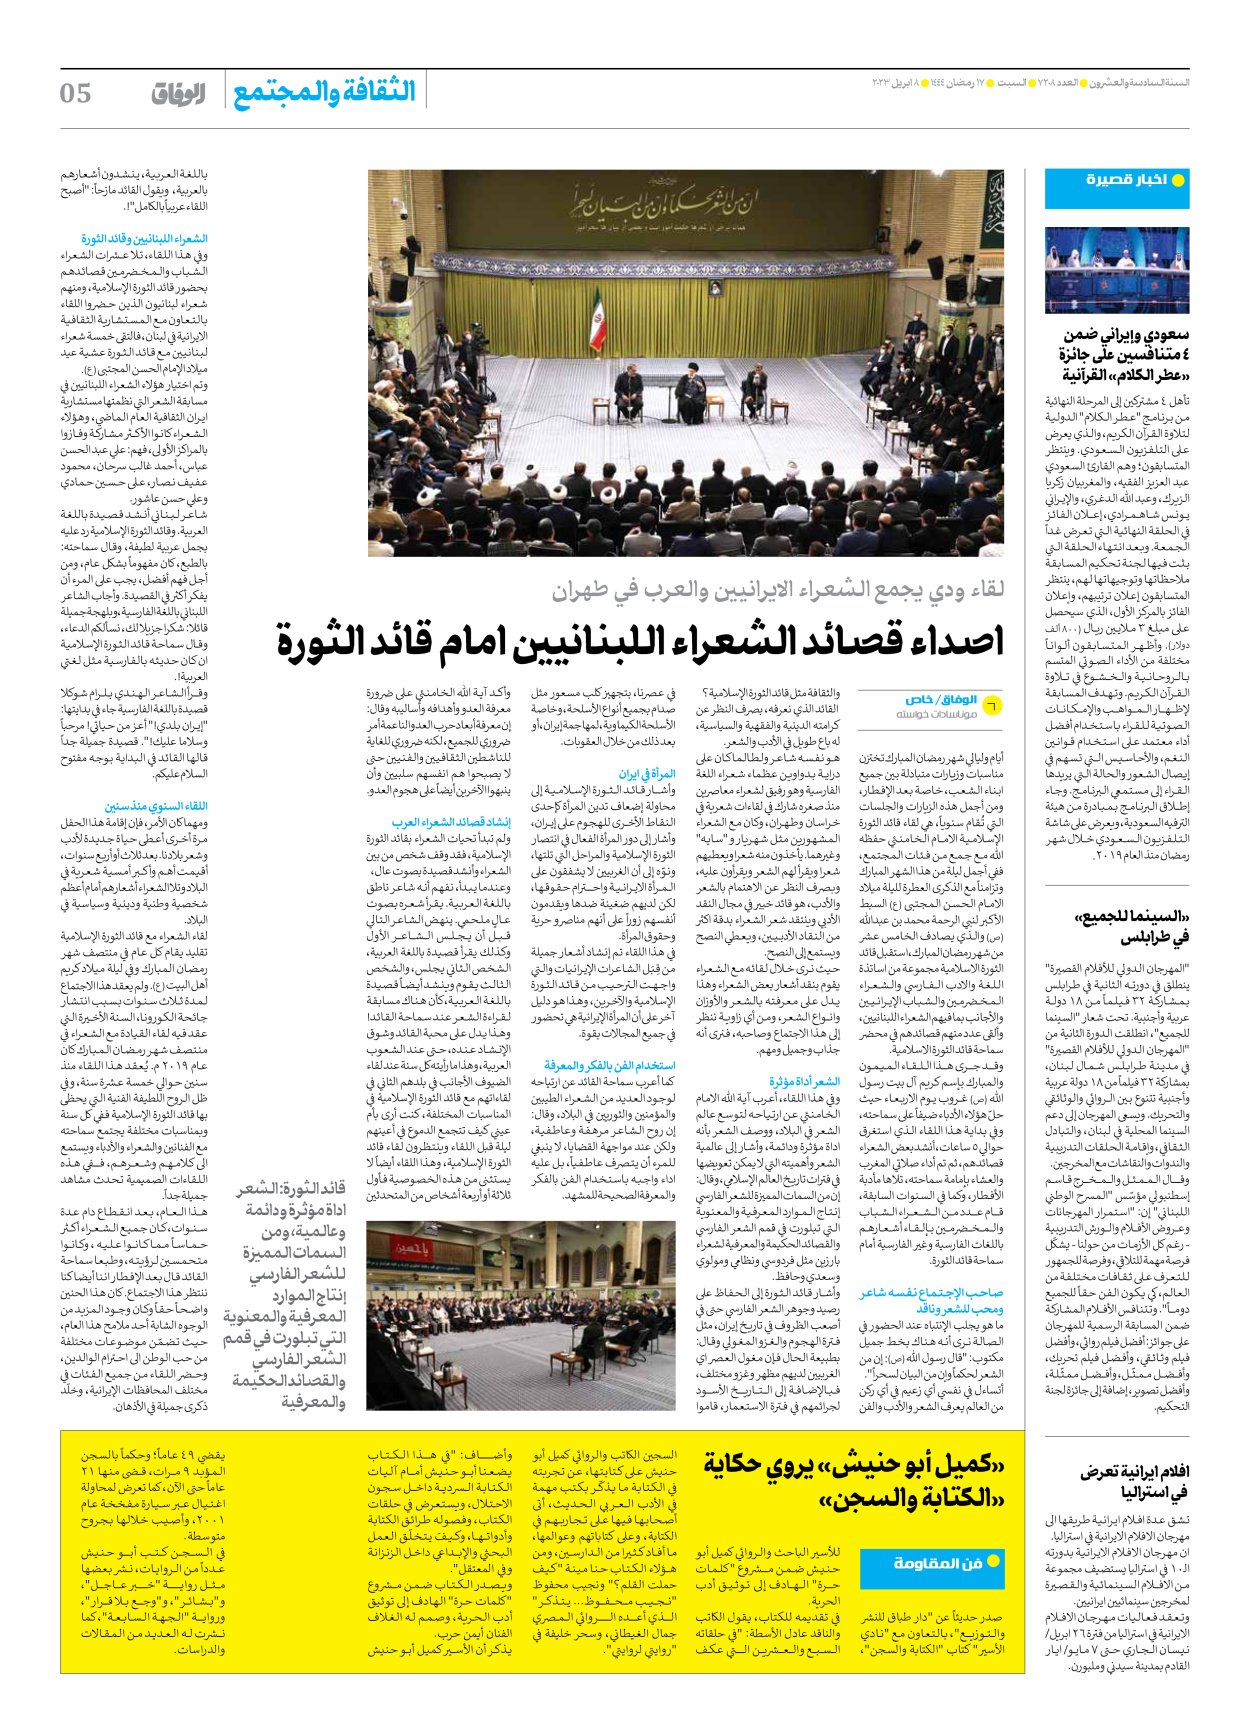 صحیفة ایران الدولیة الوفاق - العدد سبعة آلاف ومائتان وثمانية - ٠٨ أبريل ٢٠٢٣ - الصفحة ٥